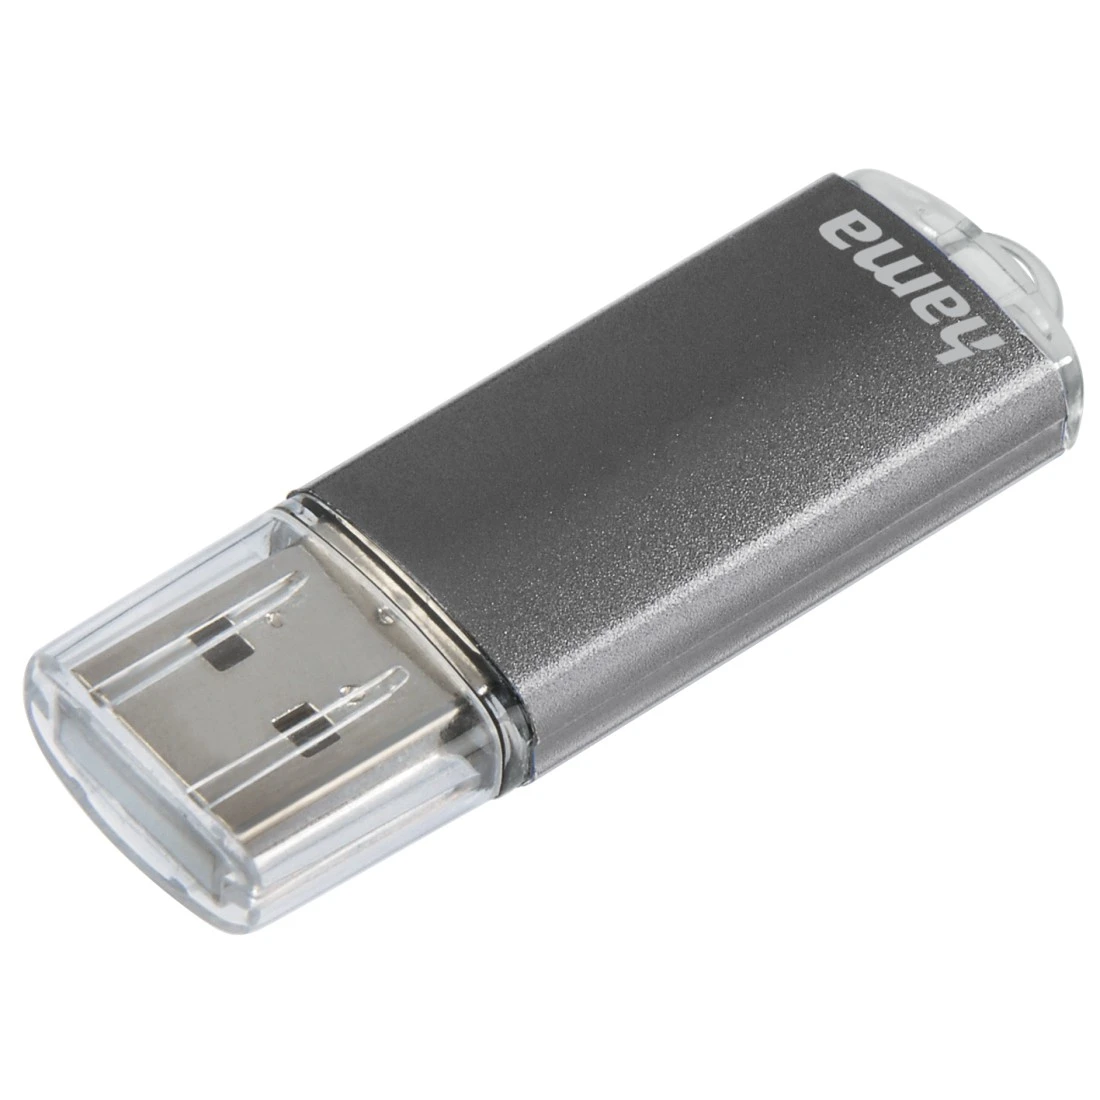 Test : La clé USB Flash Padlock 2 est parfaitement protégée